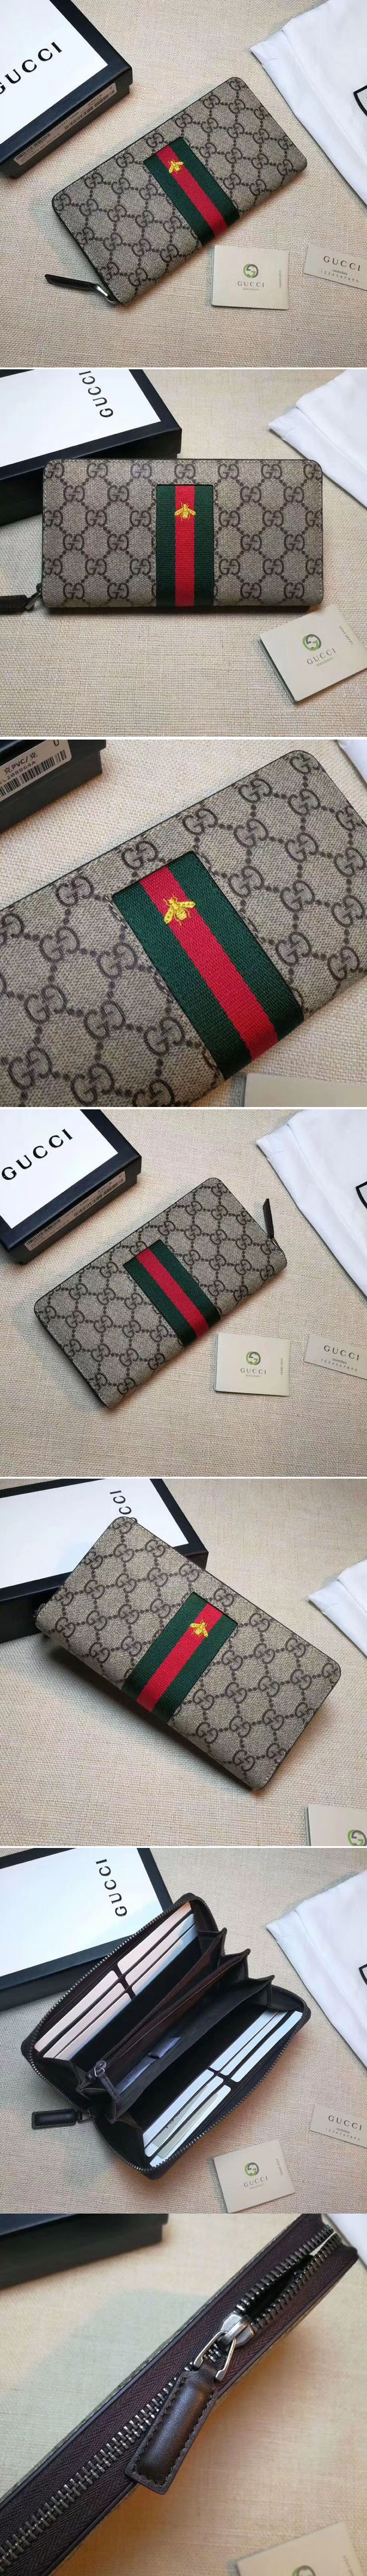 Replica Gucci 408831 Web GG Supreme zip around wallet